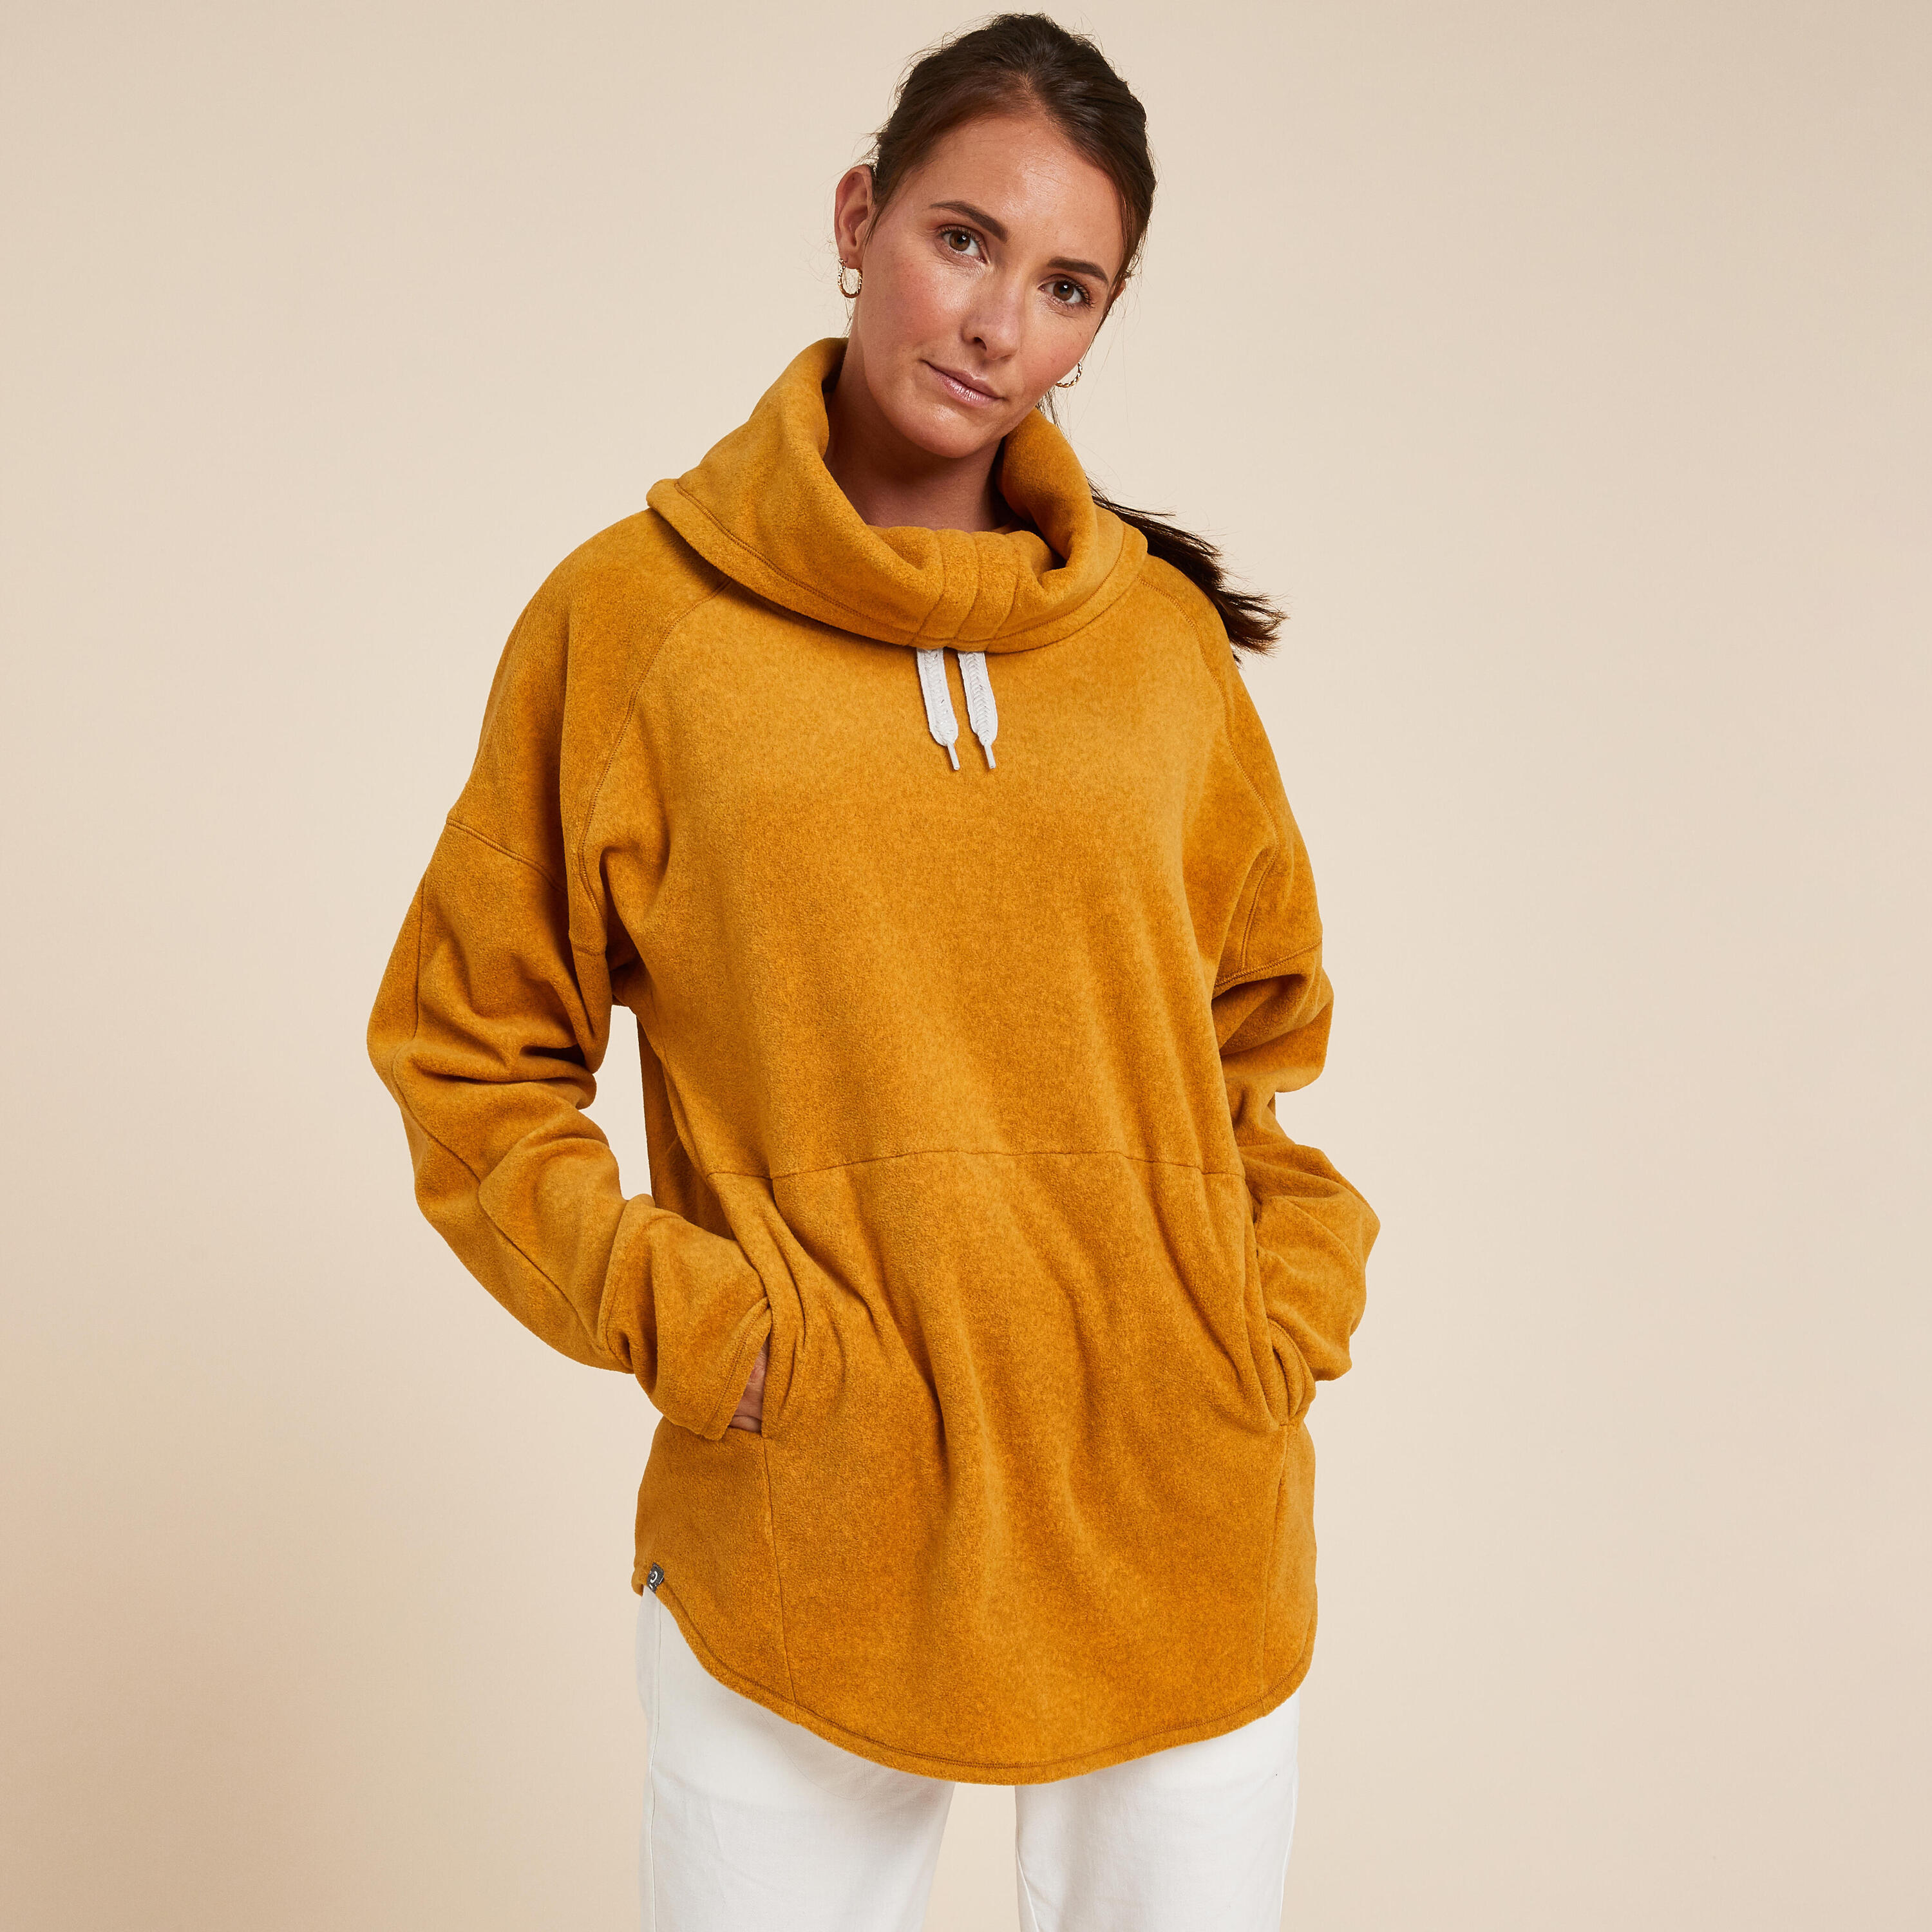 Women's Fleece Relaxation Yoga Sweatshirt - Ochre 1/6